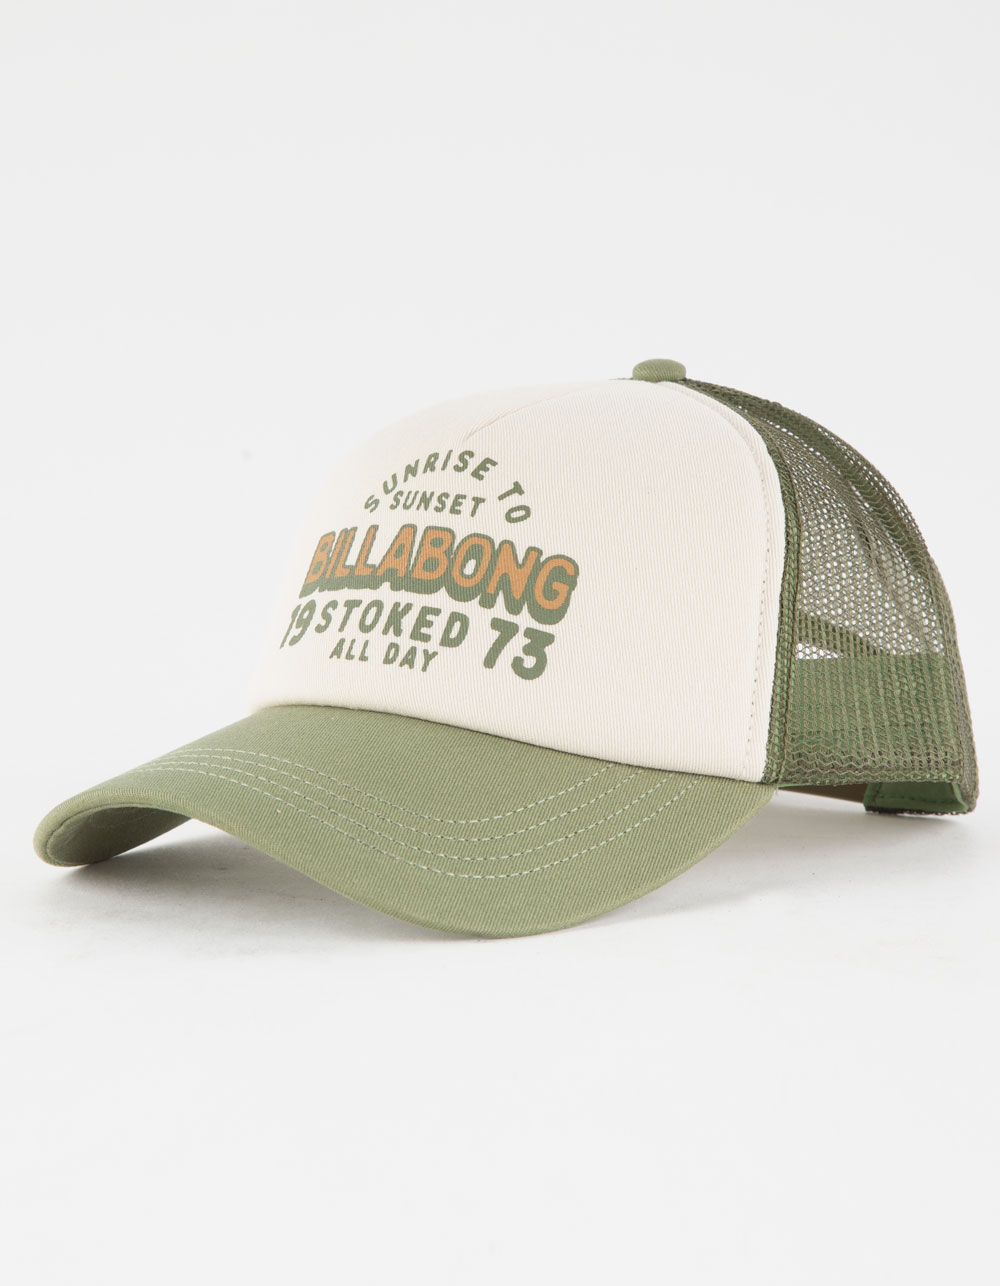 BILLABONG Aloha Forever Womens Trucker Hat - WHITE/OLIVE | Tillys